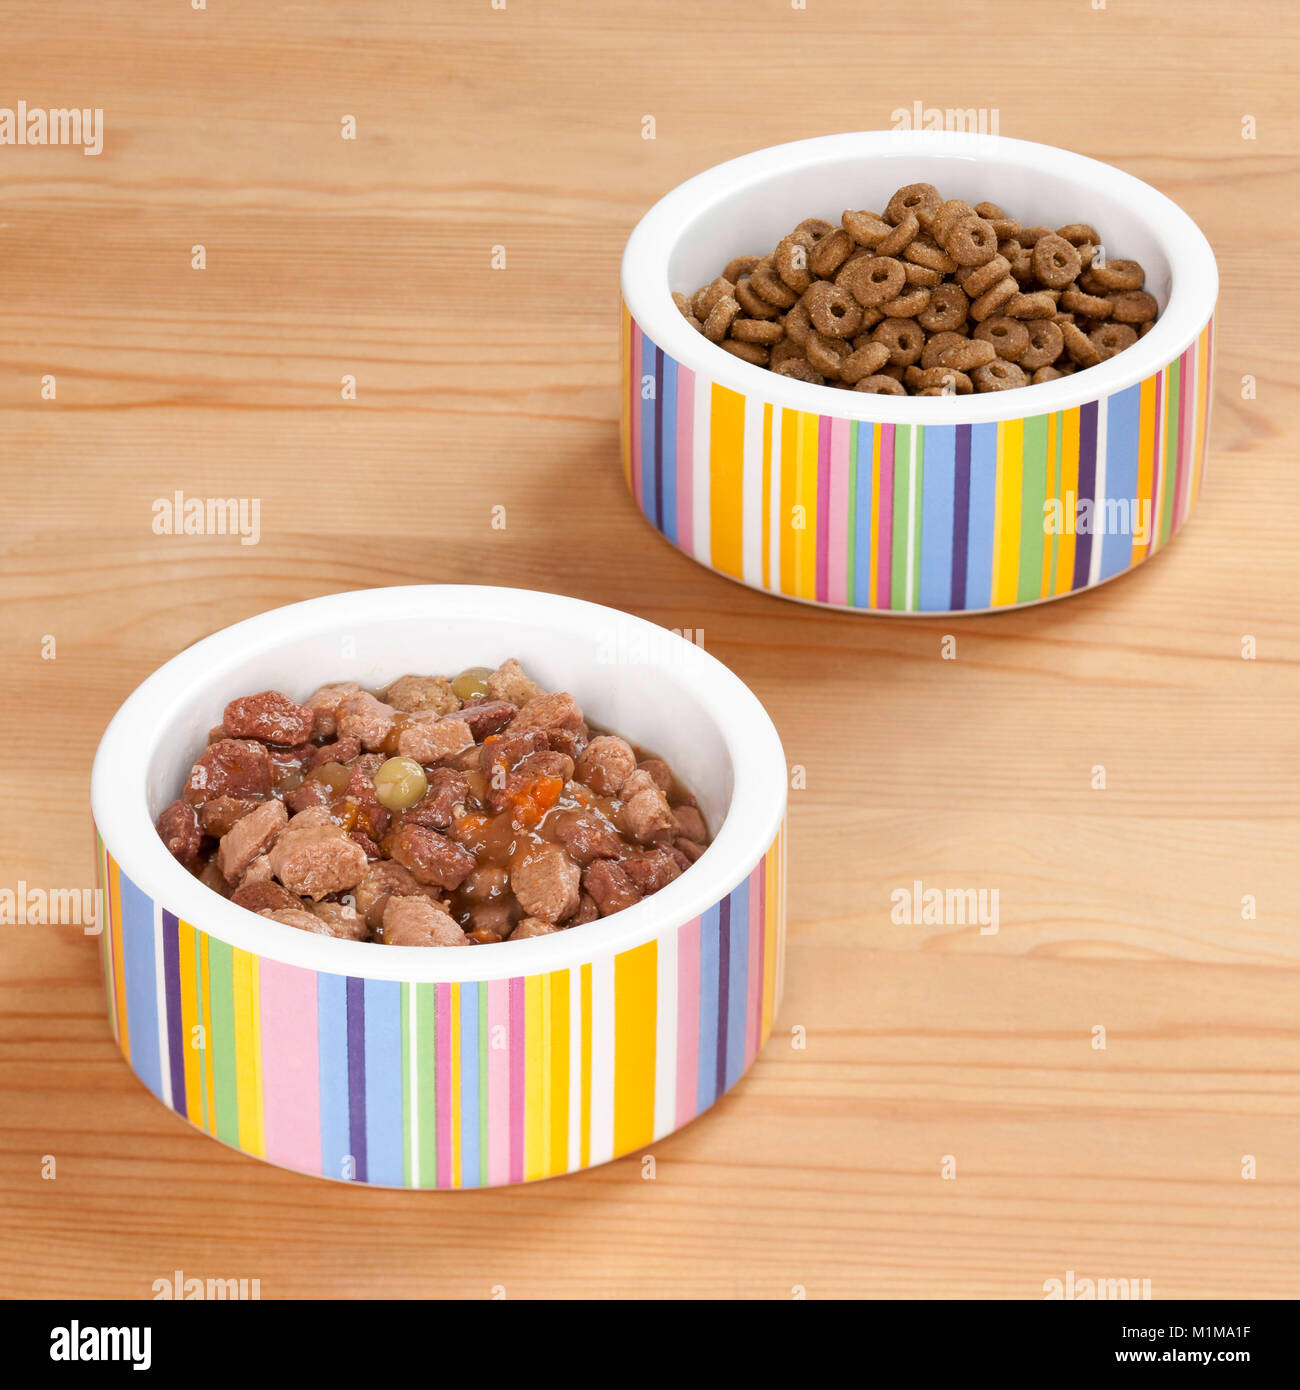 Preparate gli alimenti per gatti: cibo secco e conserve alimentari in ciotole. Germania. Foto Stock